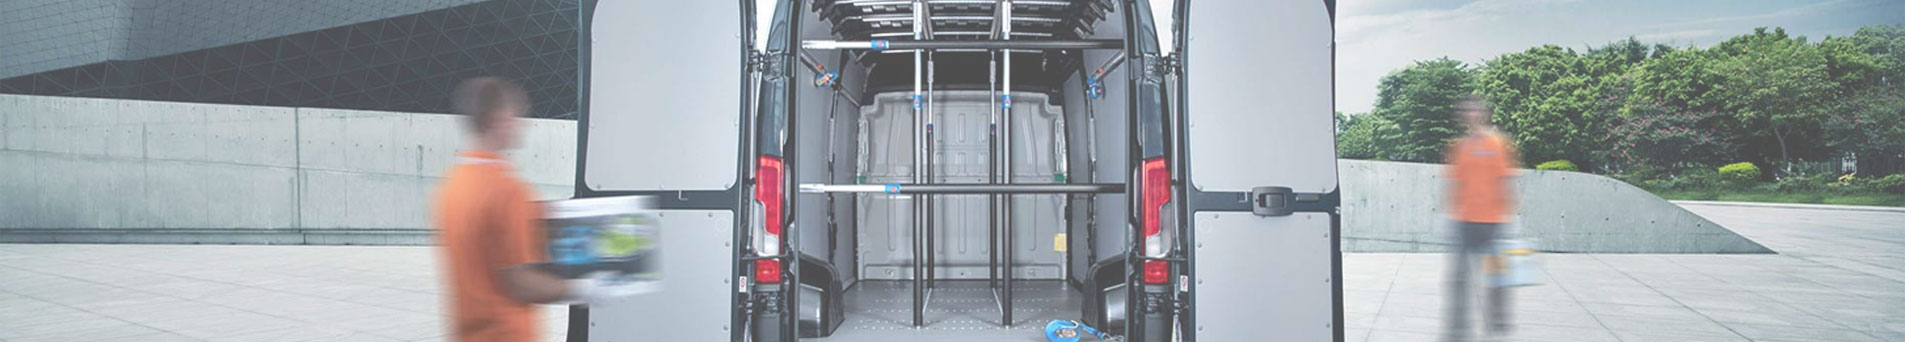 Equipamiento para furgones taller - Condisa Transformaciones del Sur S.L.